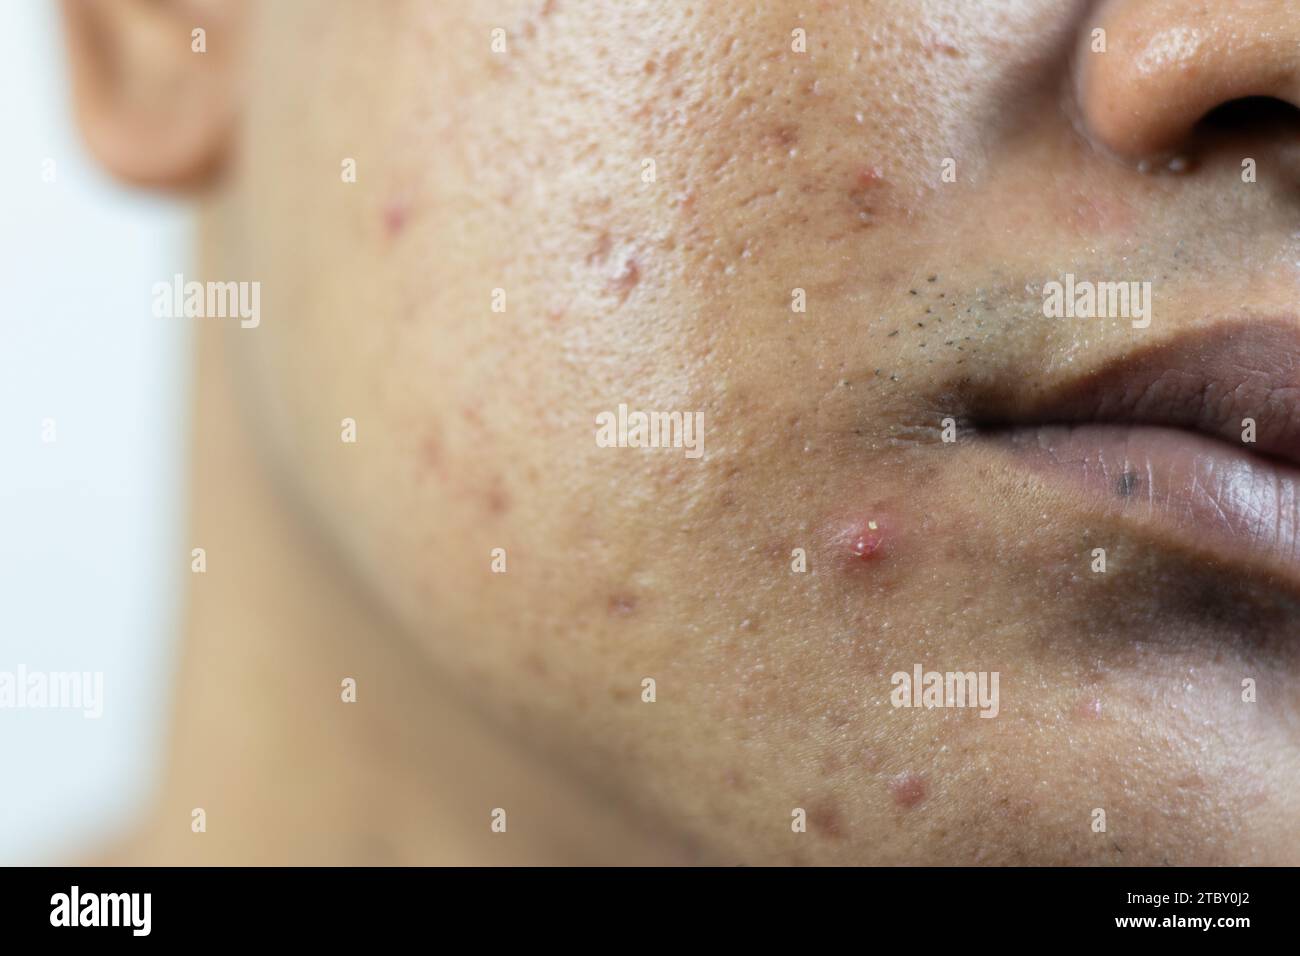 Hautprobleme. Zur Frage der entzündeten Akne im Gesicht. Entzündete Akne besteht aus Schwellungen, Rötungen und Poren, die stark mit Bakterien verstopft sind, o Stockfoto